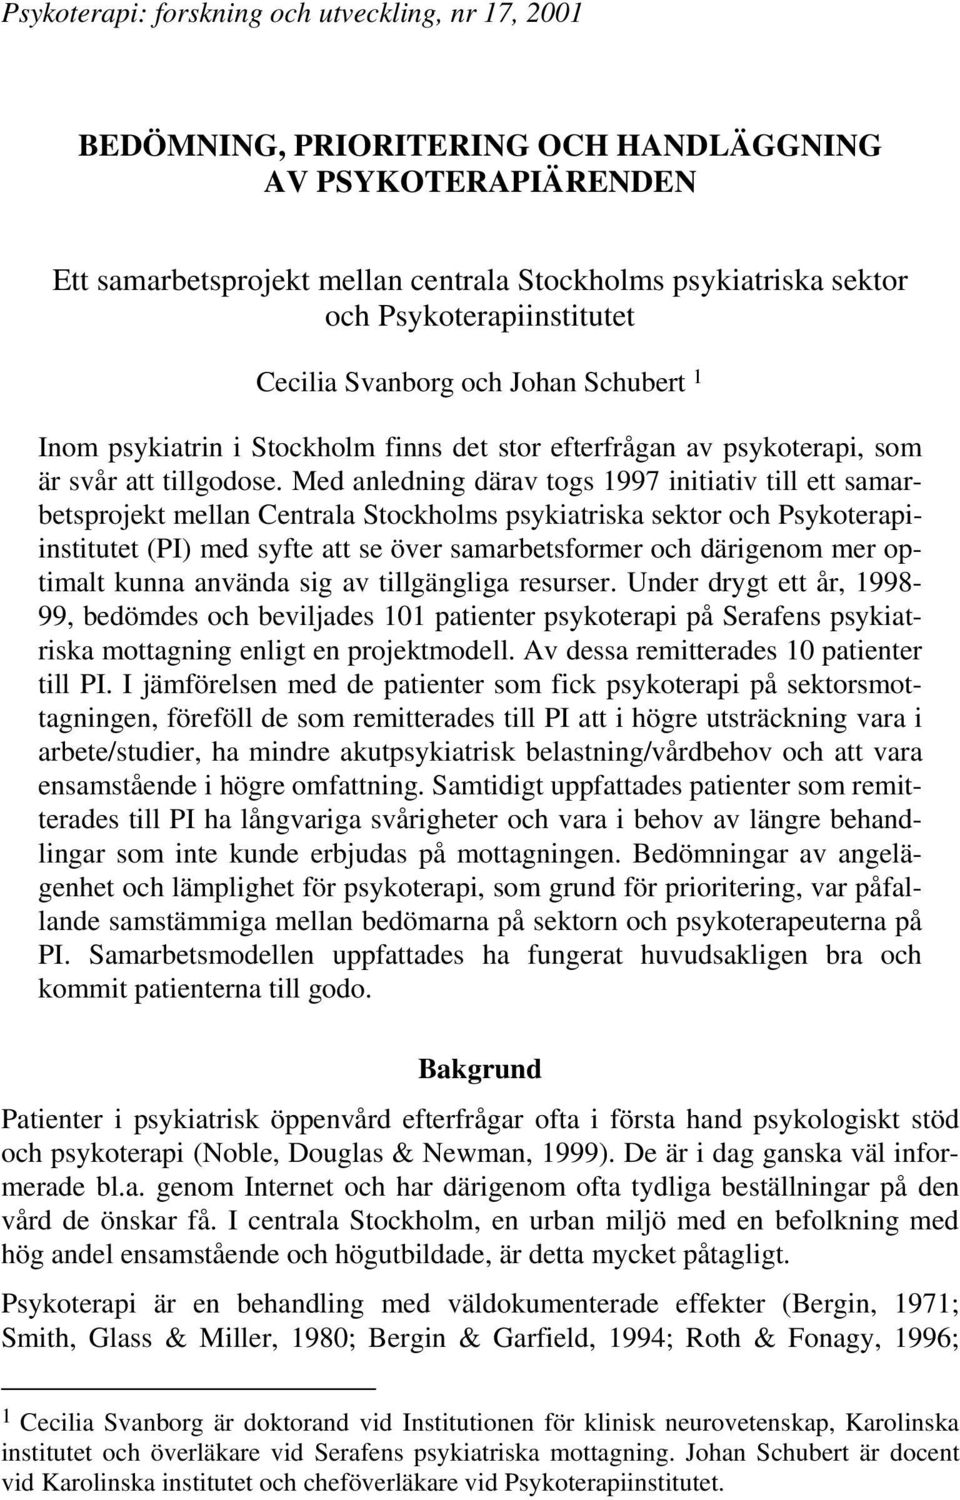 Med anledning därav togs 1997 initiativ till ett samarbetsprojekt mellan Centrala Stockholms psykiatriska sektor och Psykoterapiinstitutet (PI) med syfte att se över samarbetsformer och därigenom mer